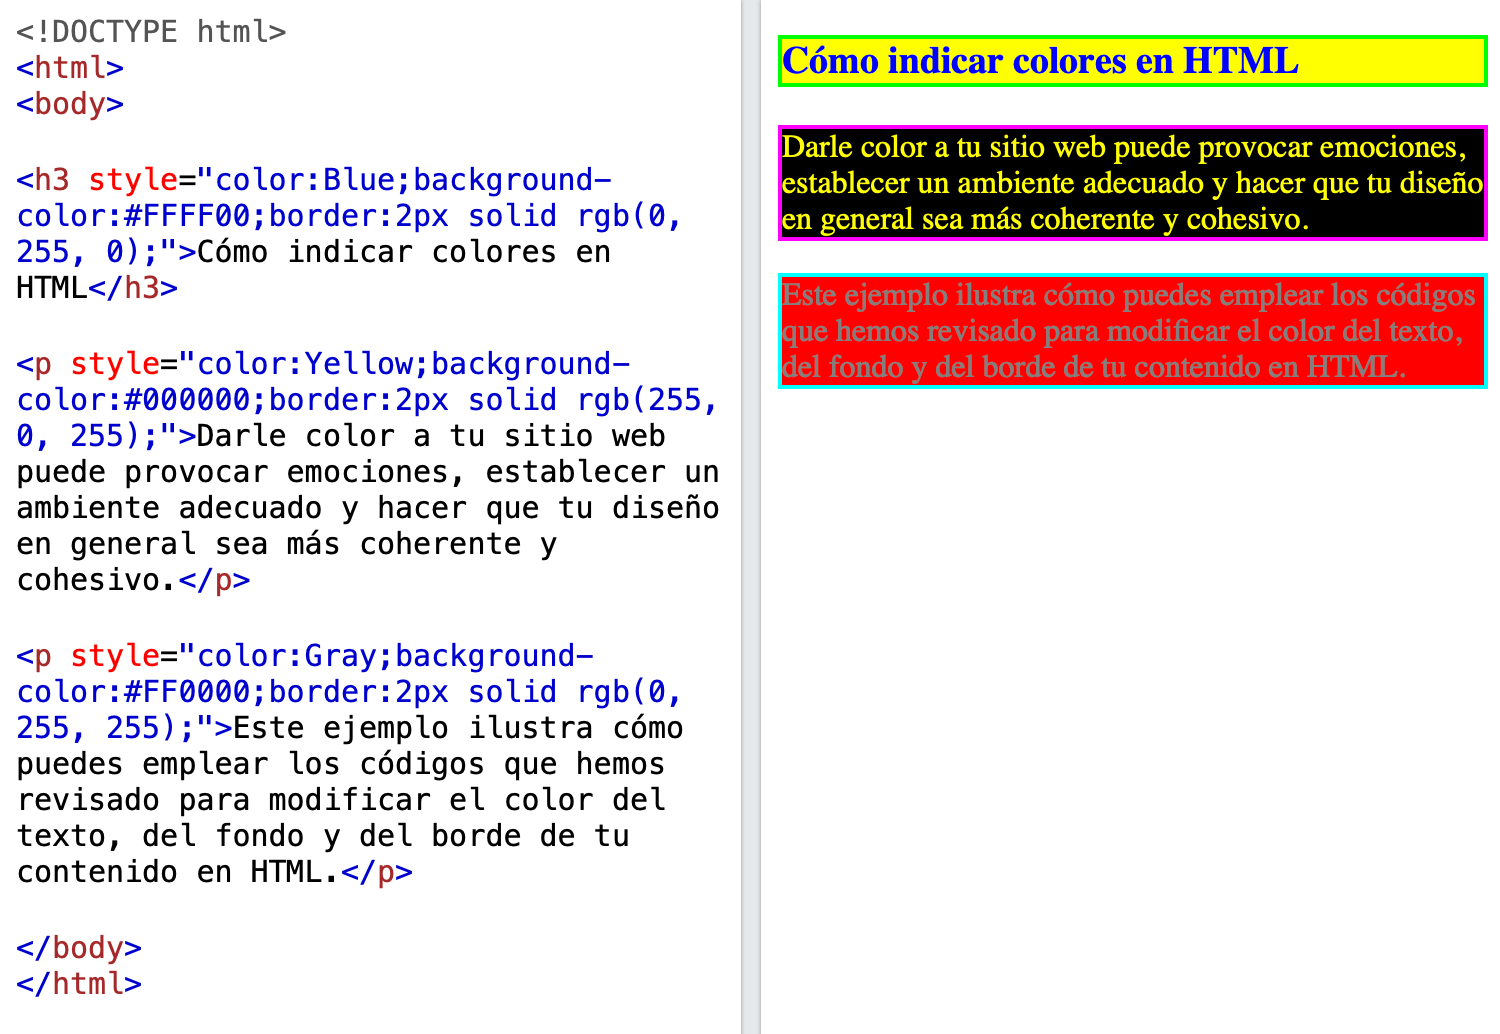 Ejemplo de código en HTML con propiedad de color en borde